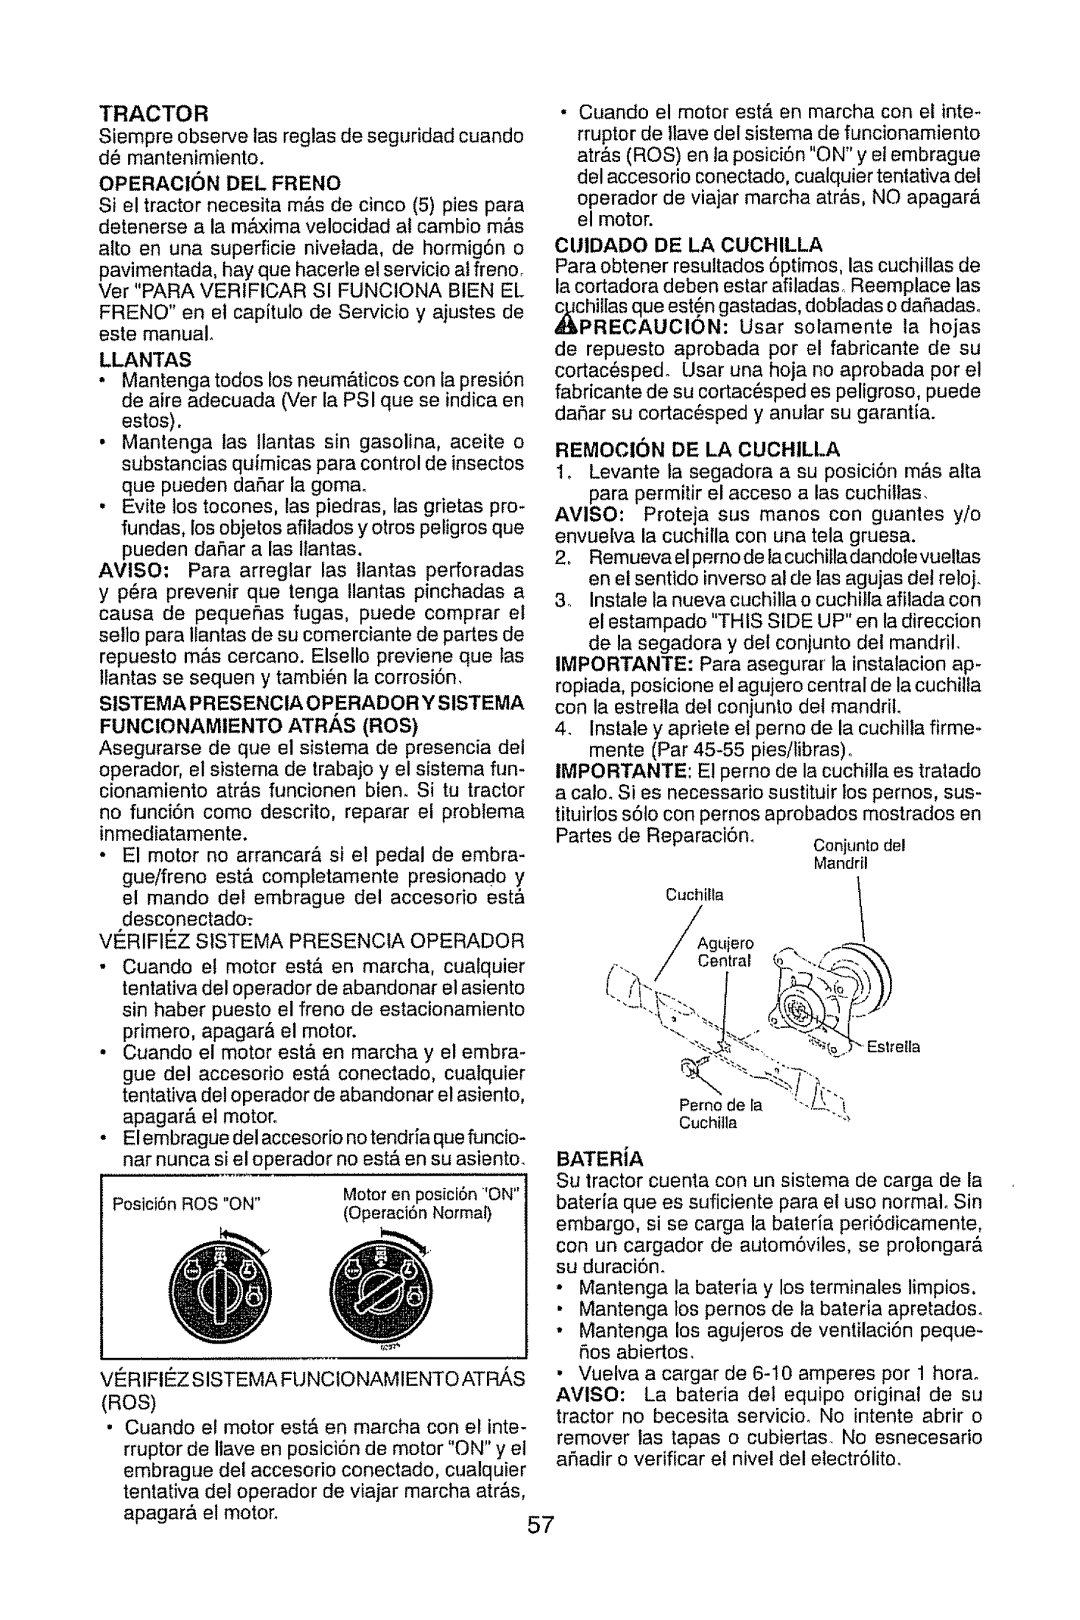 Craftsman 917.289470 manual Cuidado De La Cuchilla, Remocion De La Cuchilla 